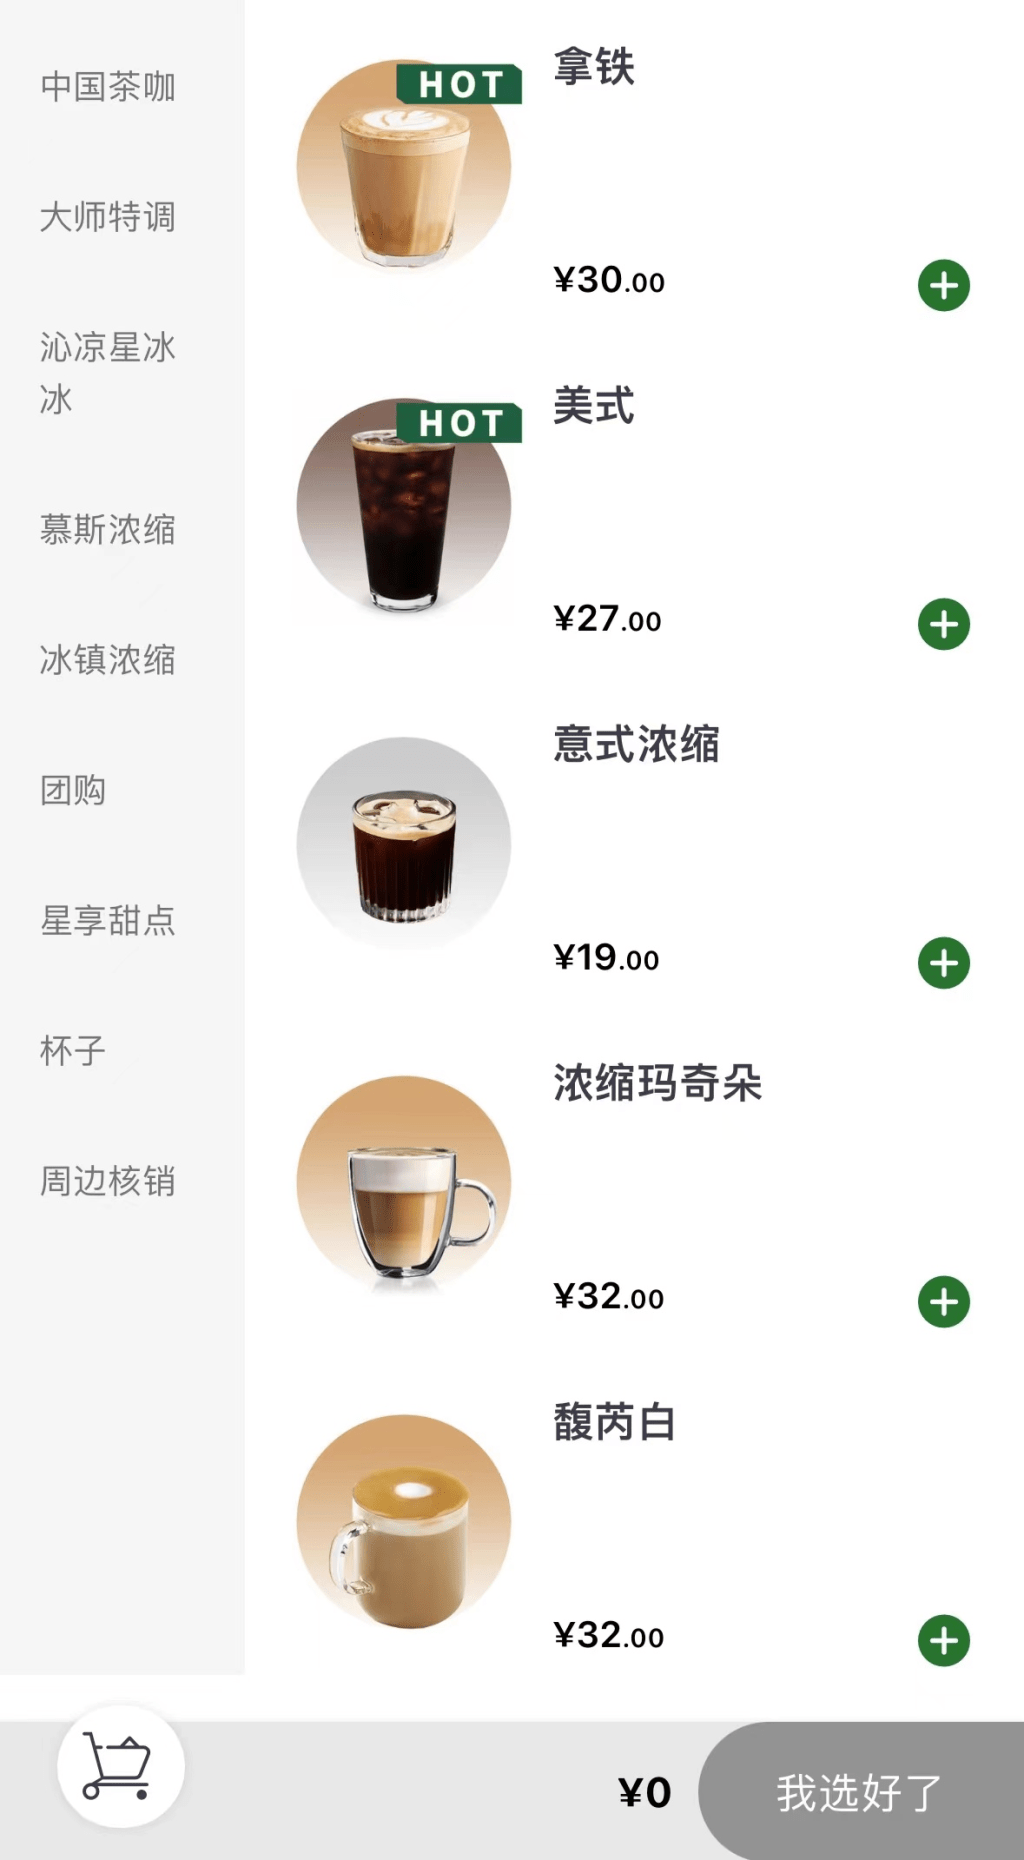 假冒App點單頁面。 上海警方